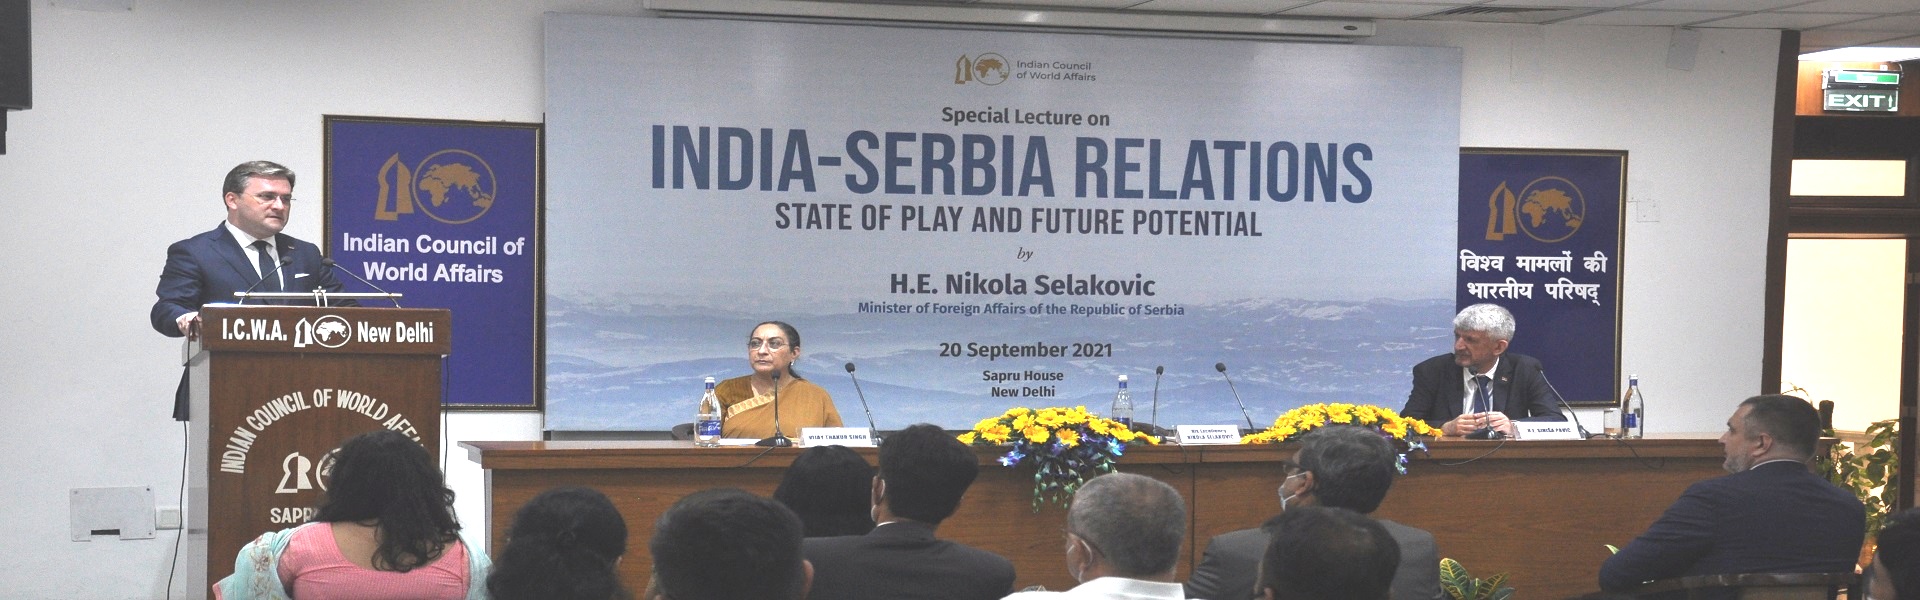 महामहिम श्री निकोला सेलाकोविच, सर्बिया गणराज्य के विदेश मामलों के मंत्री द्वारा भारत-सर्बिया संबंधों: स्टेटऑफ़ प्ले और भविष्य की क्षमता पर विशेष व्याख्यान , 20 सितंबर 2021